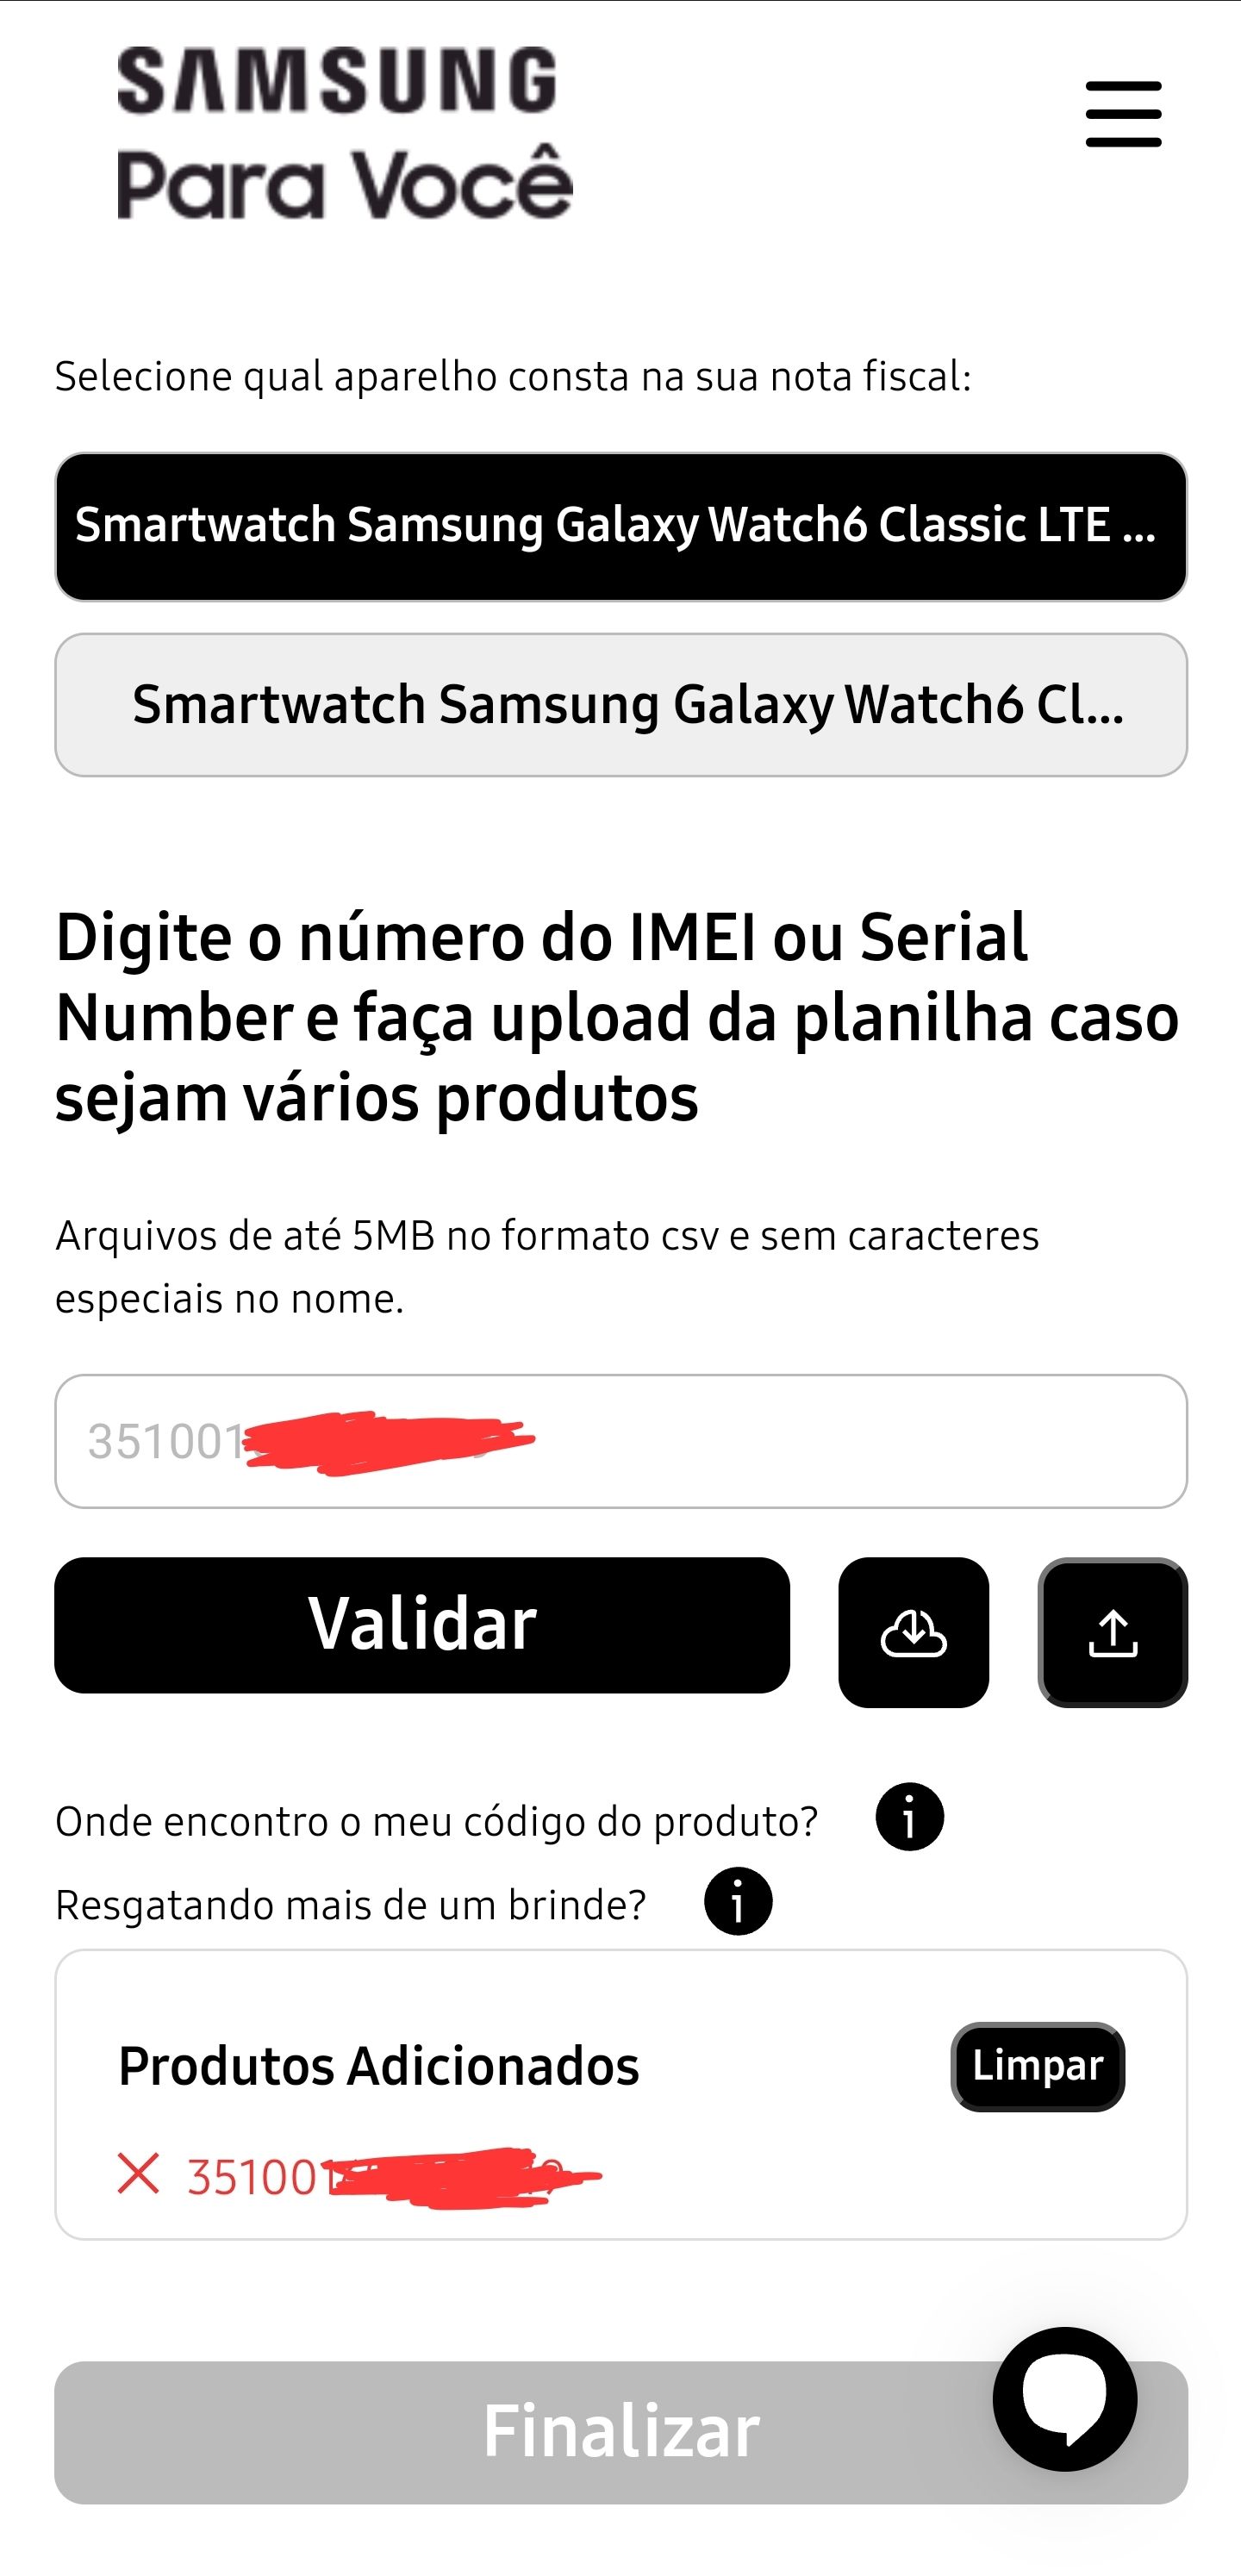 Samsung Para Você